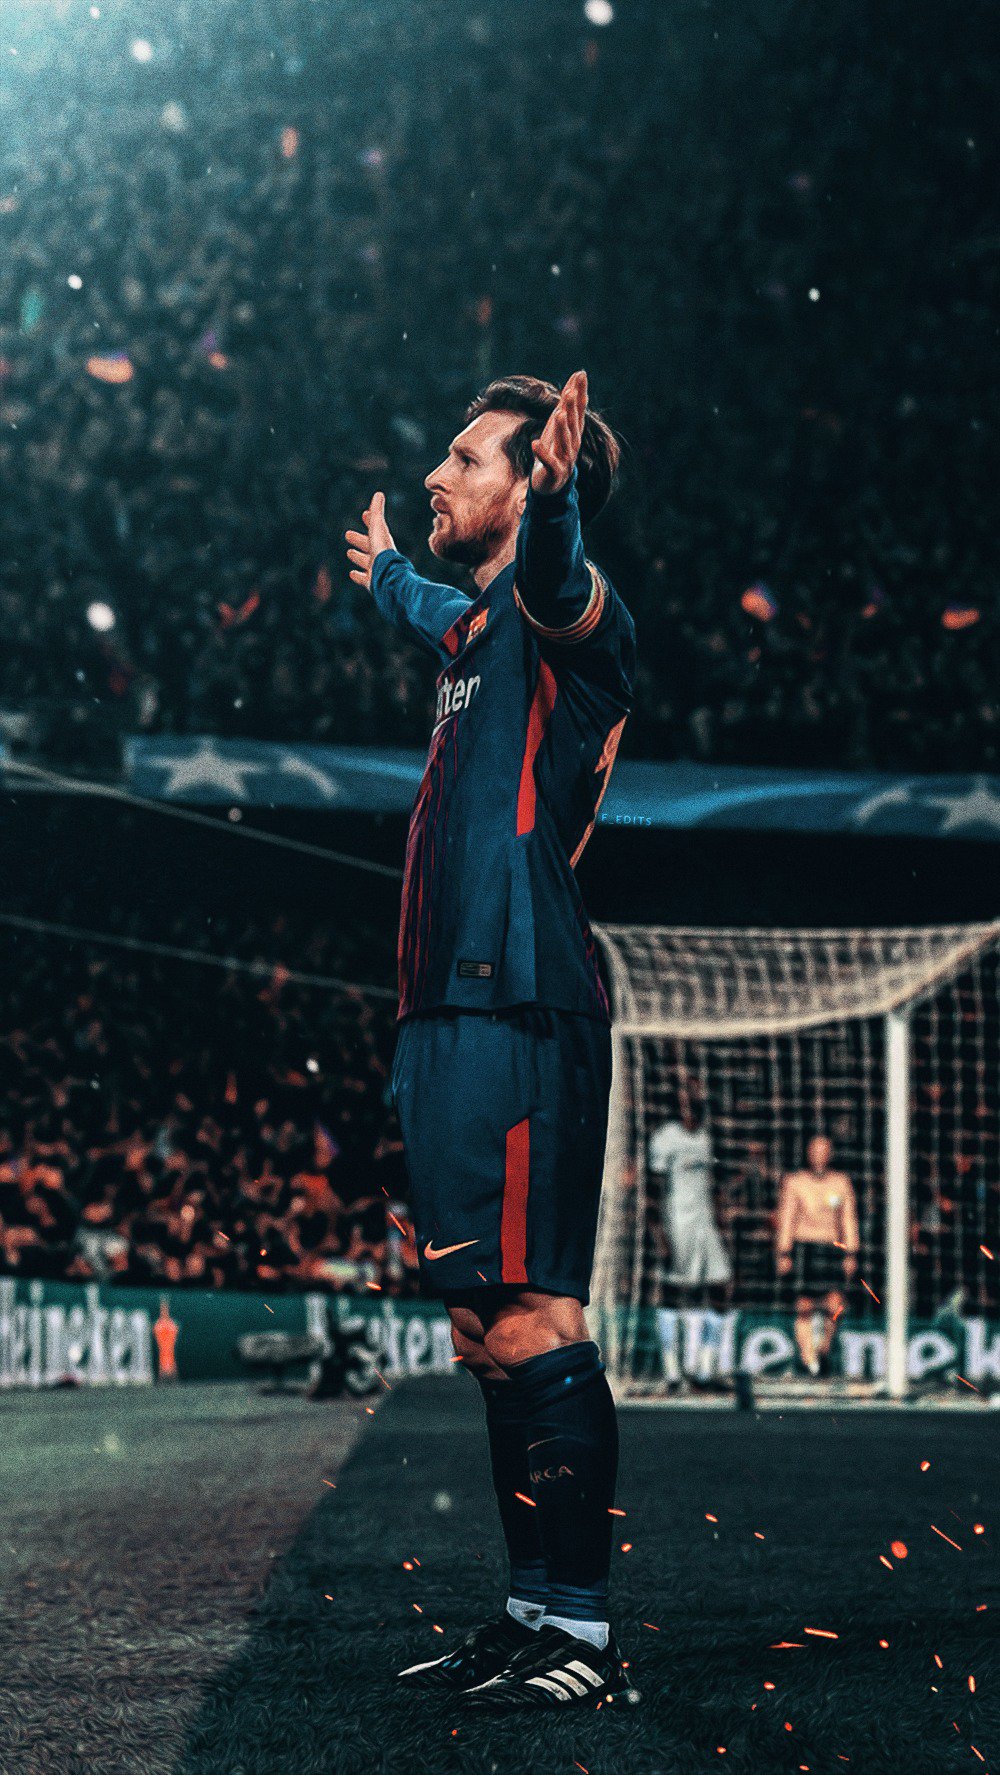 Hãy tải xuống hình nền Lionel Messi đầy sức sống và năng lượng để cảm nhận được tinh thần bất khuất của siêu sao sân cỏ này.